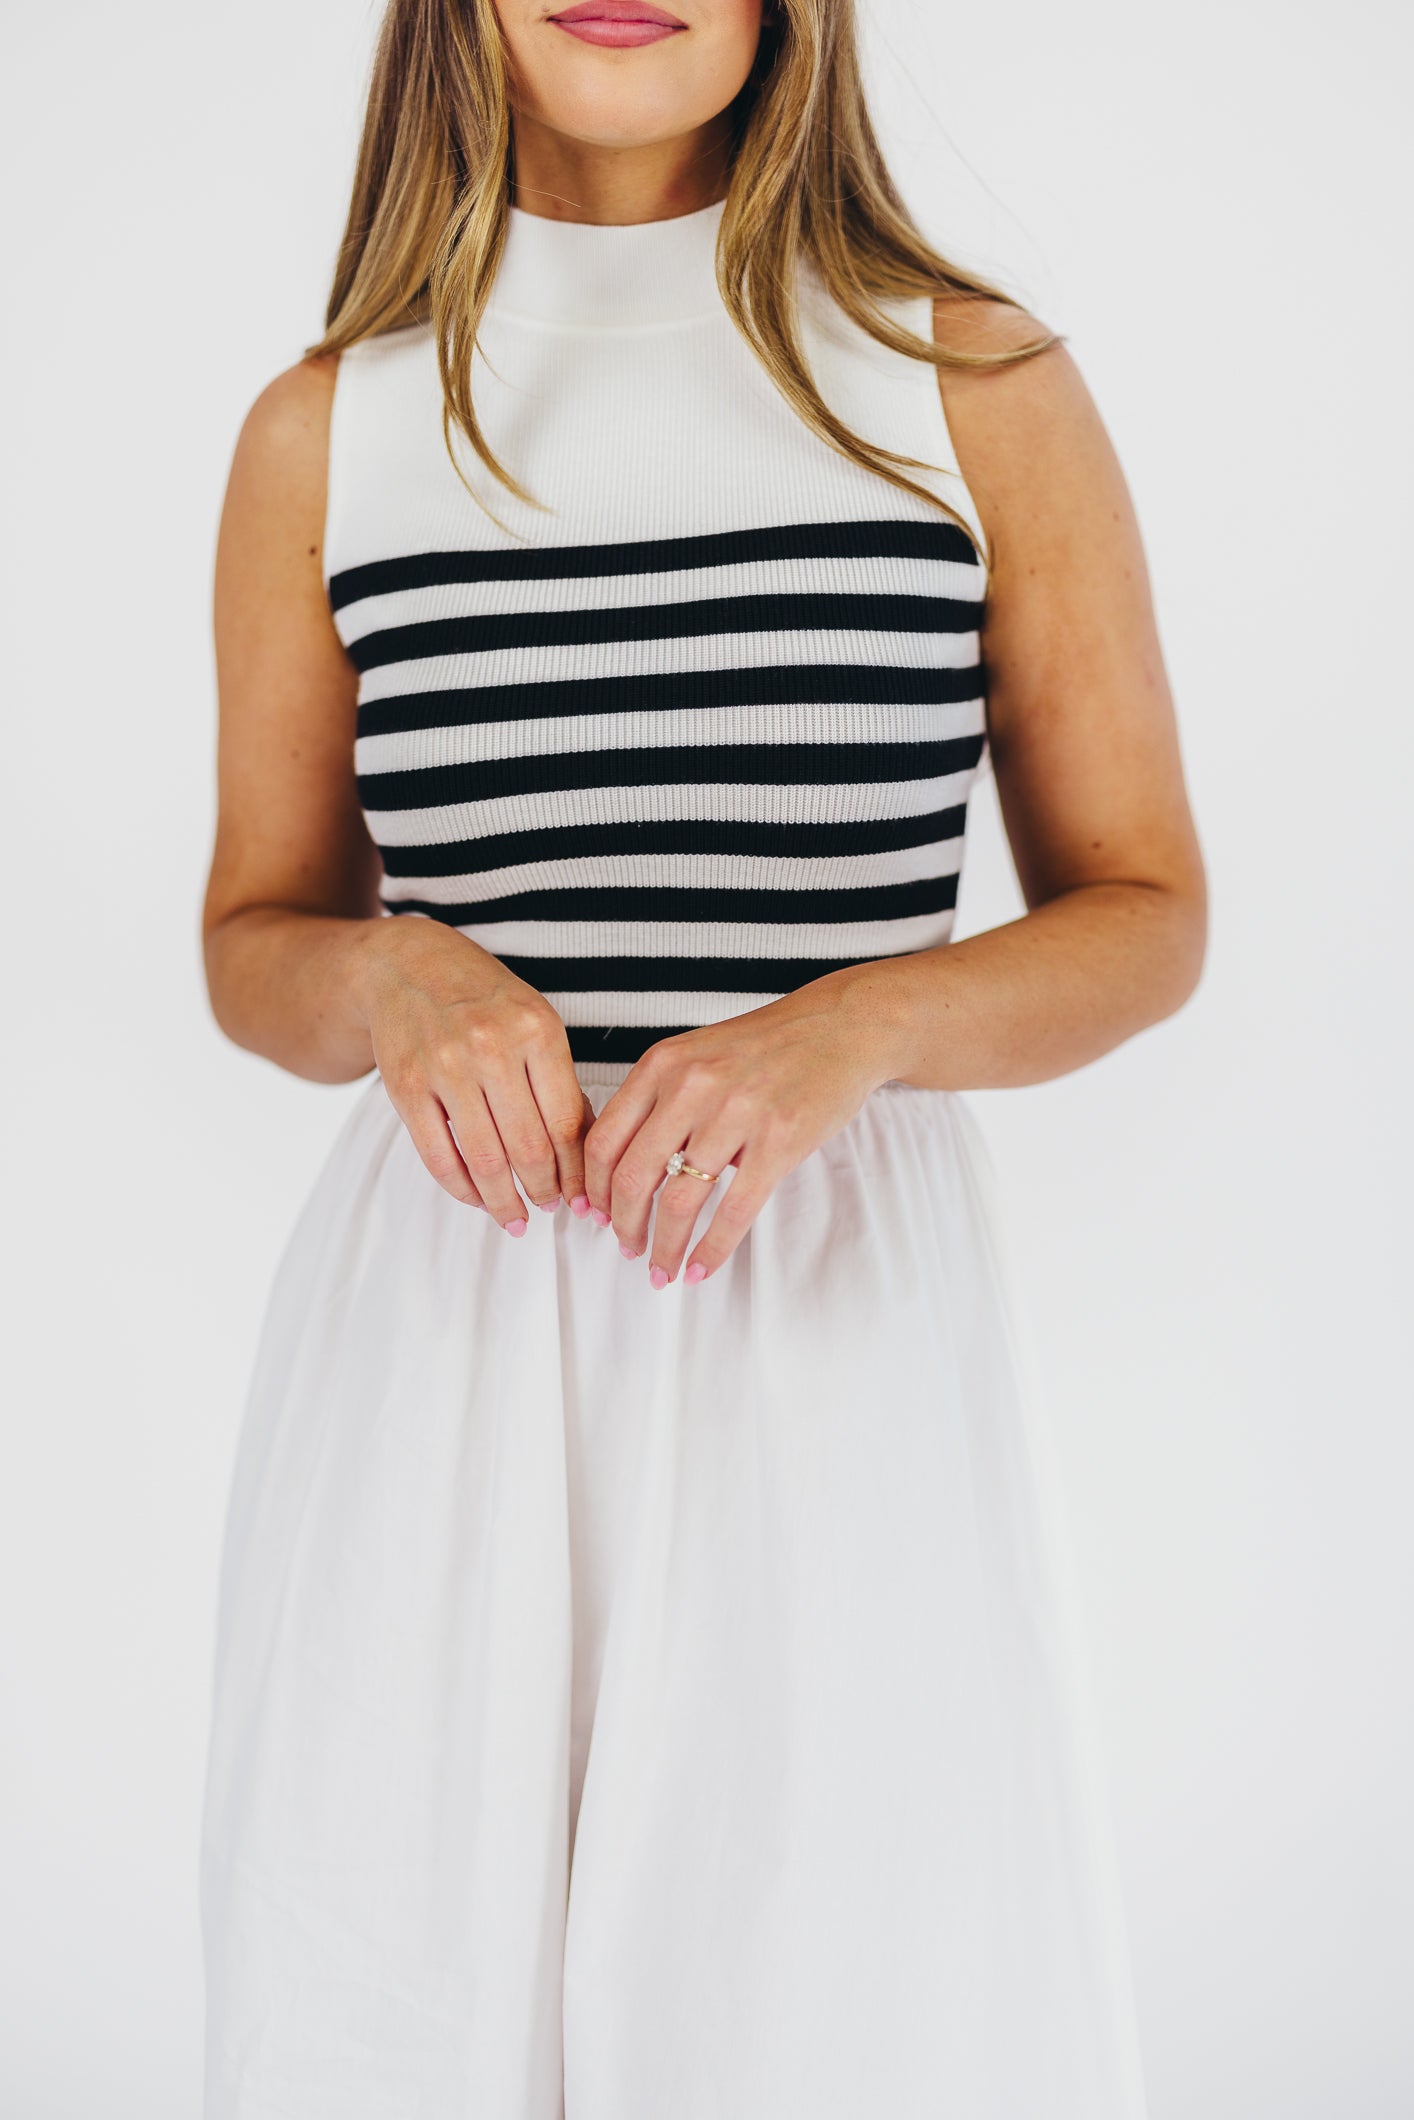 Tia Knit Maxi Dress in White Stripe